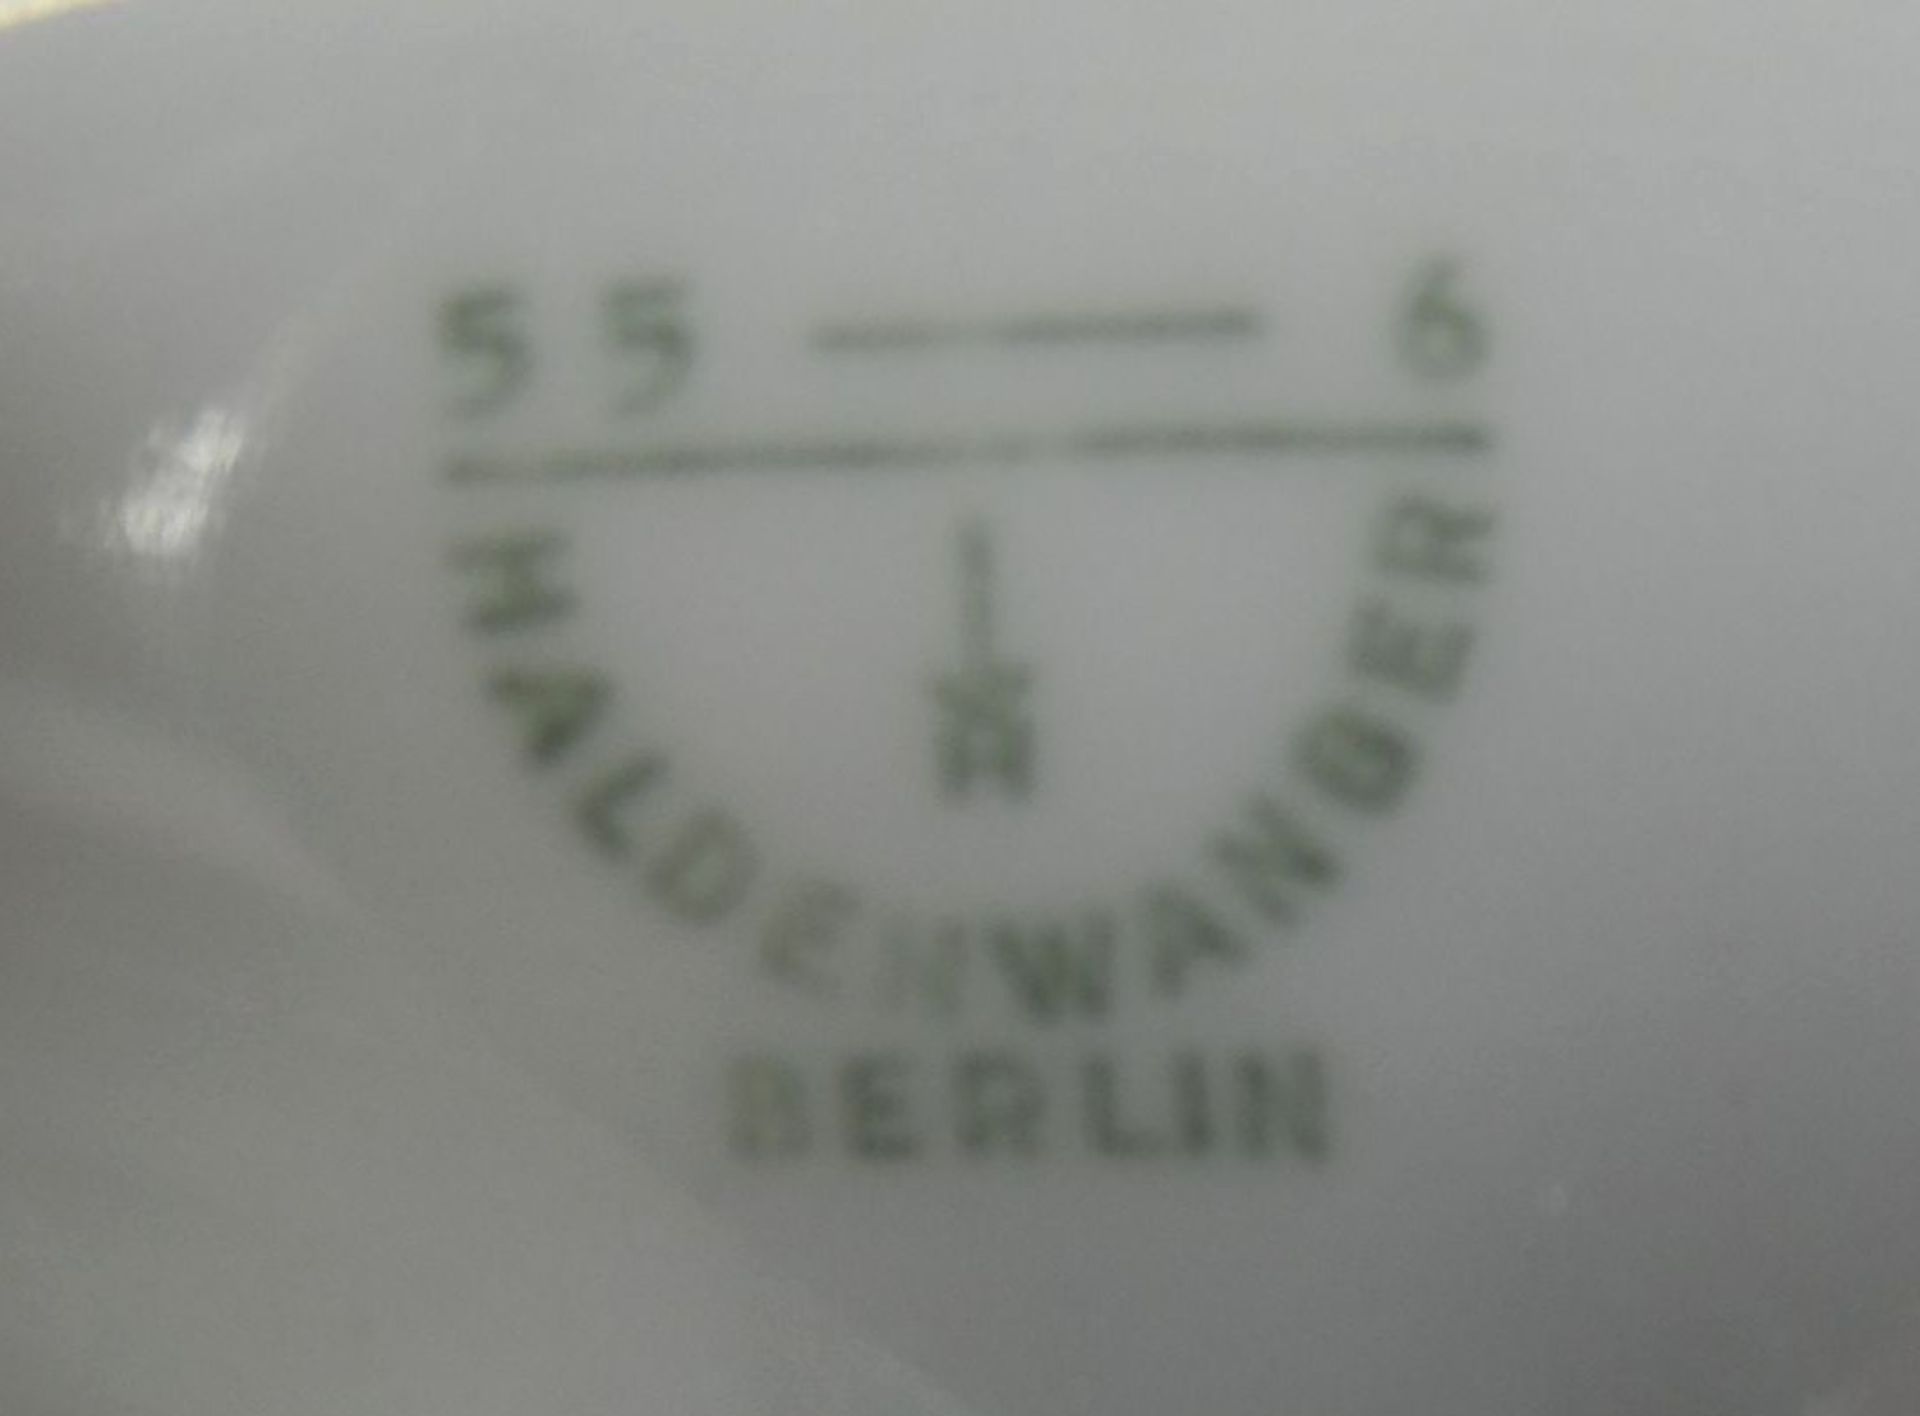 kl. Porzellanmörser mit Pistell "Haldenwanger-Berlin", H-7 cm, D-16 c- - -22.61 % buyer's premium on - Bild 4 aus 5